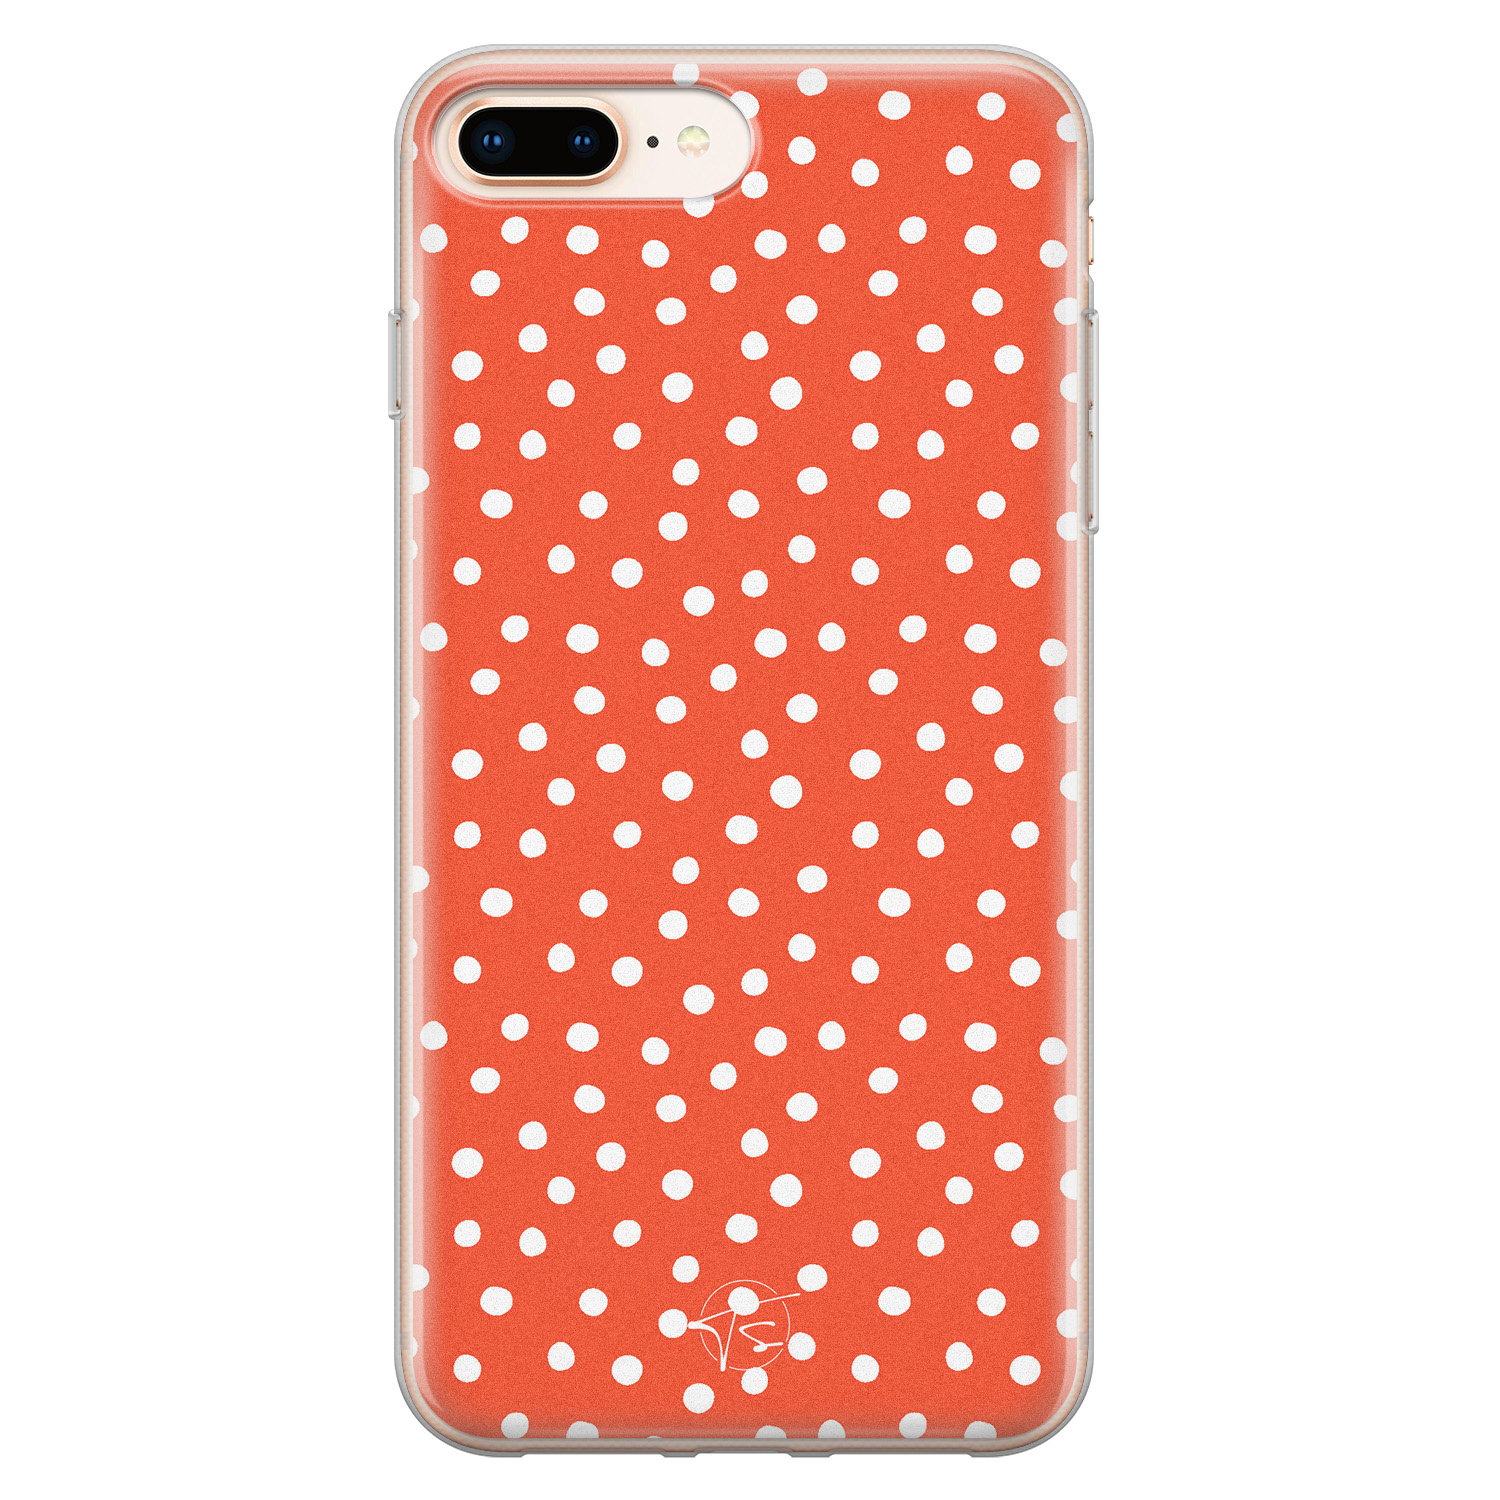 Telefoonhoesje Store iPhone 8 Plus/7 Plus siliconen hoesje - Oranje stippen